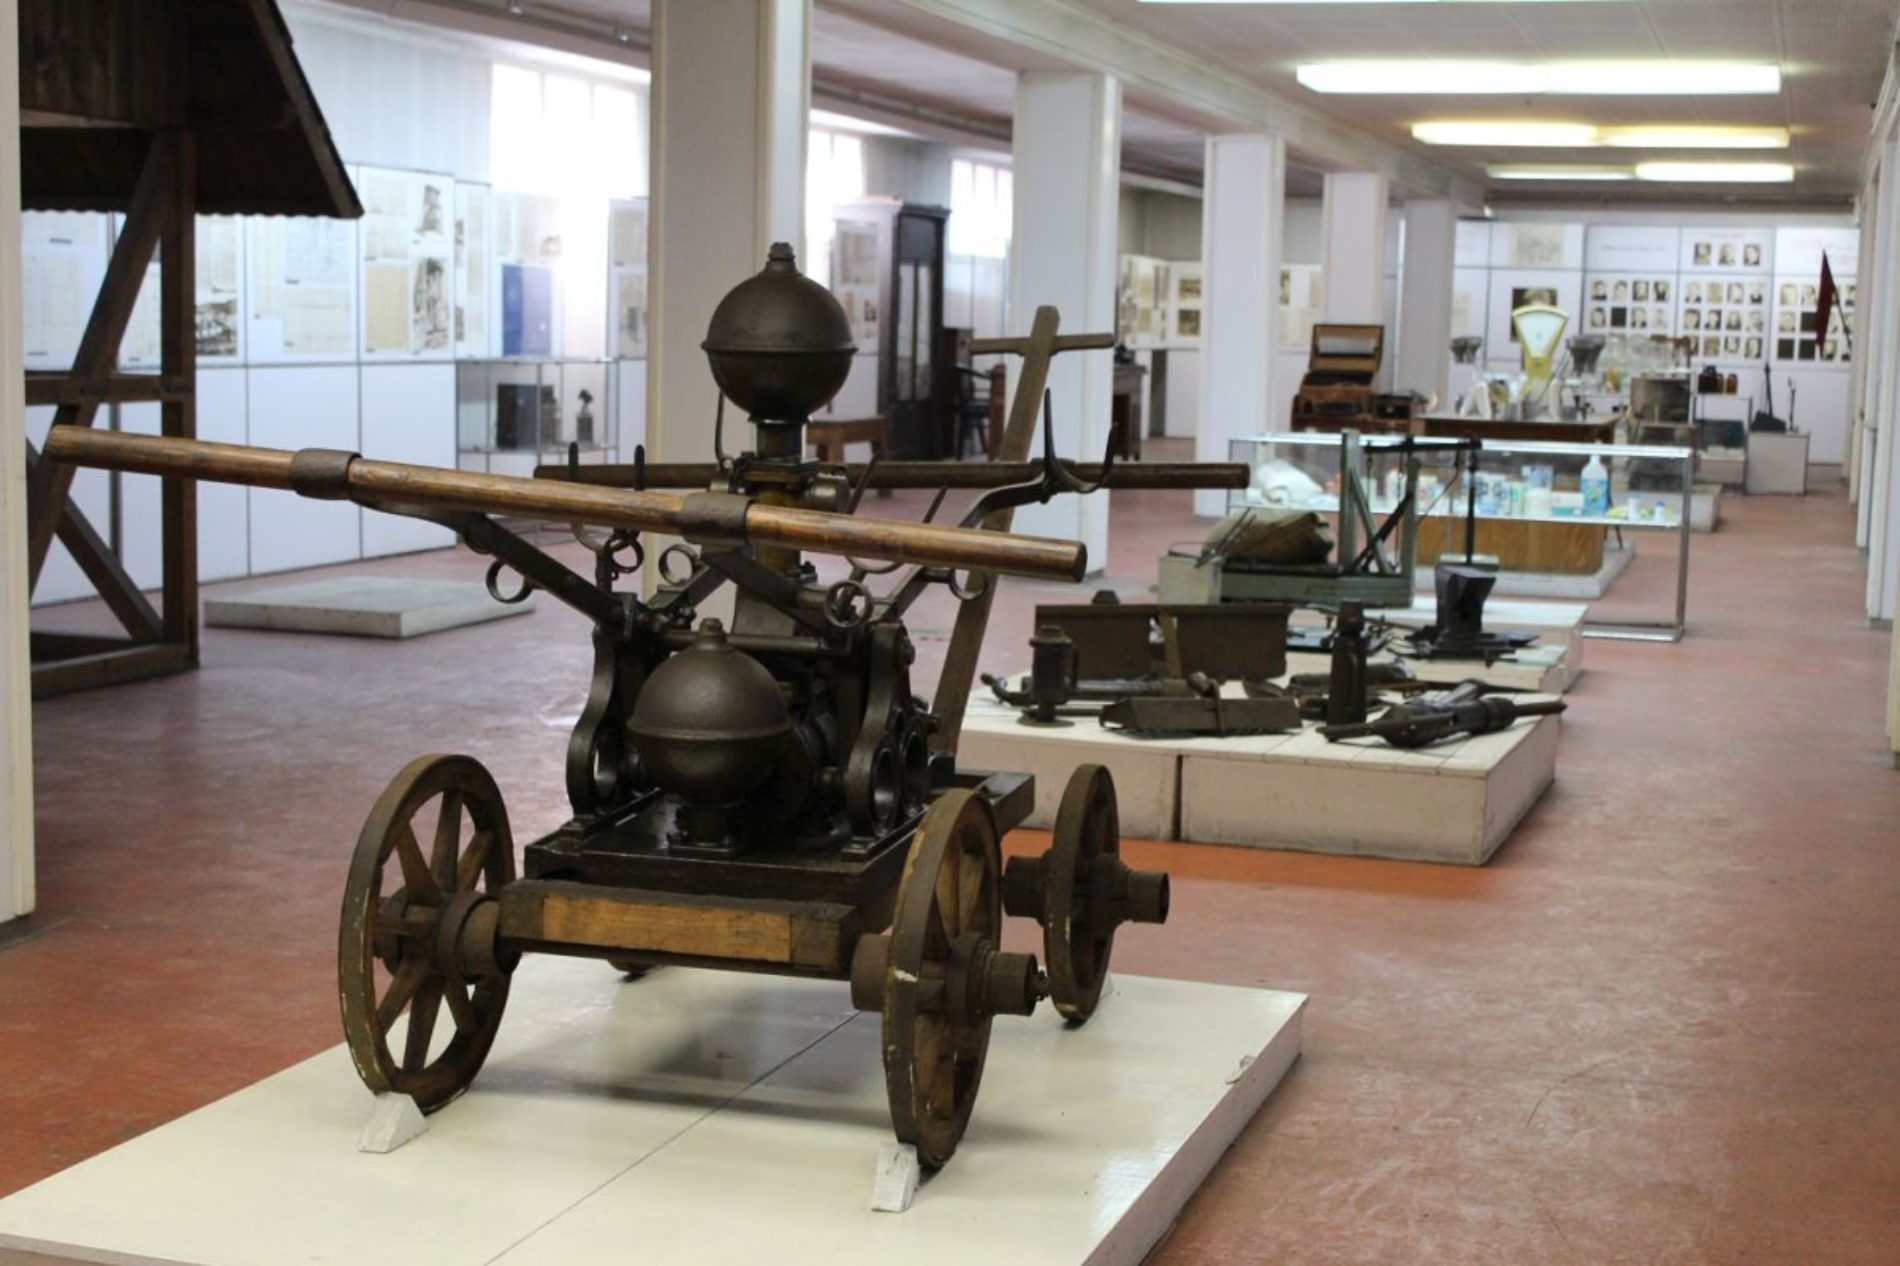  Nacionalni spomenik – Muzej soli u Tuzli